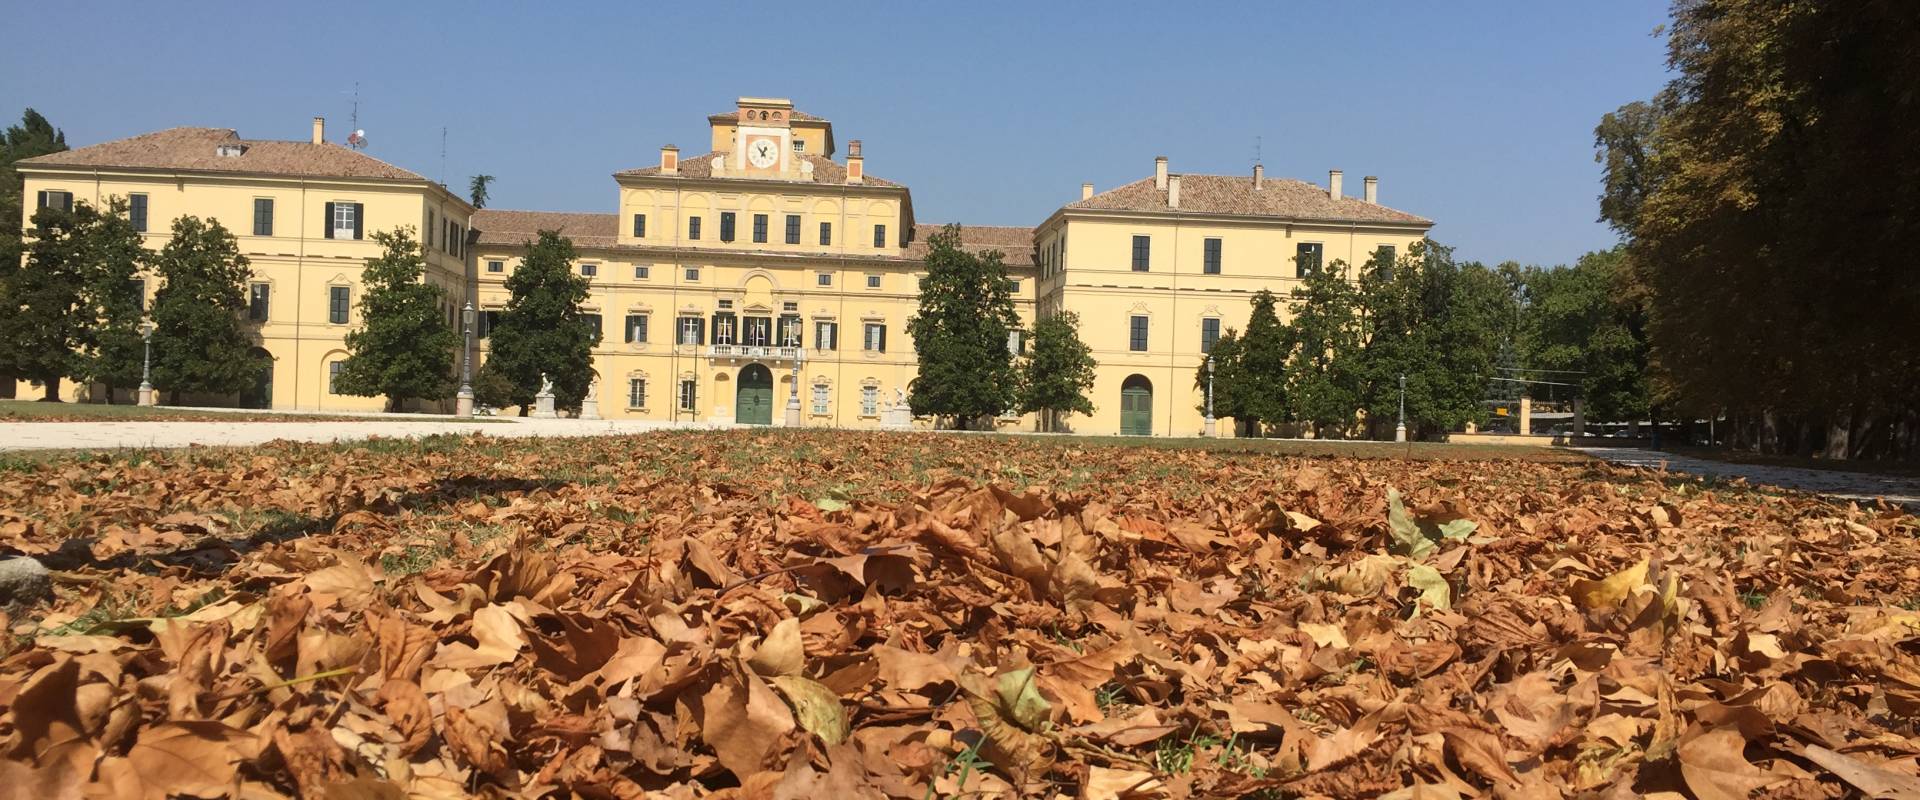 Palazzo Ducale di Parma con le foglie photo by Simo129